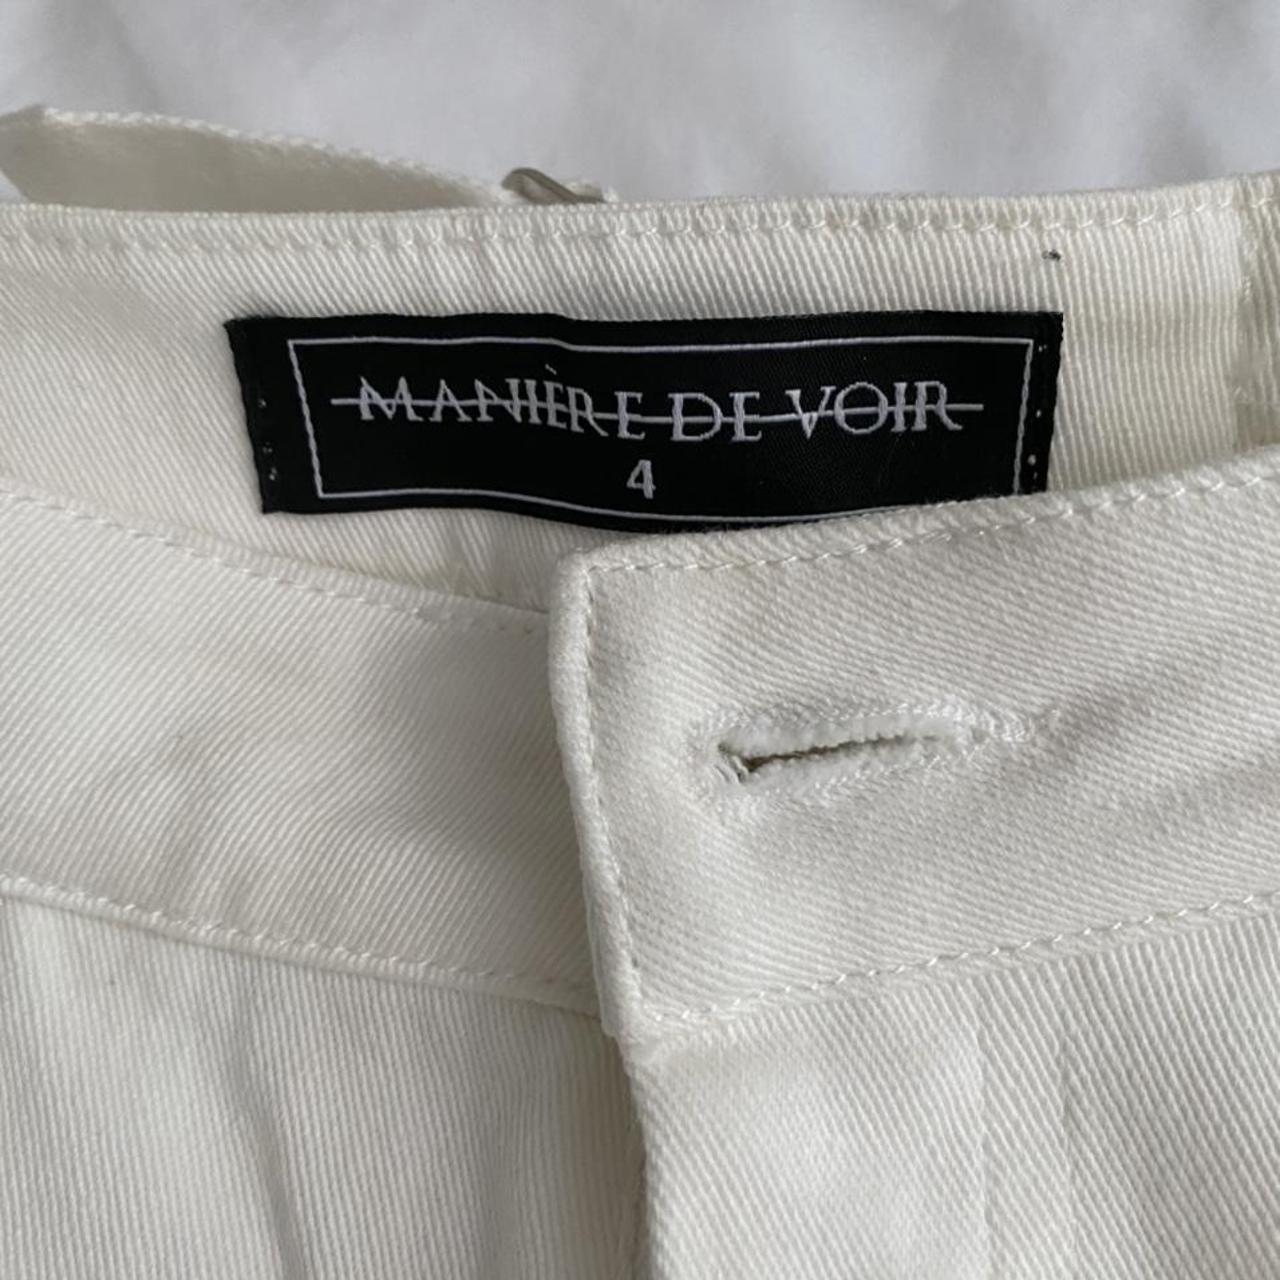 MANIÈRE DE VOIR JEANS size 4 worn once - Depop